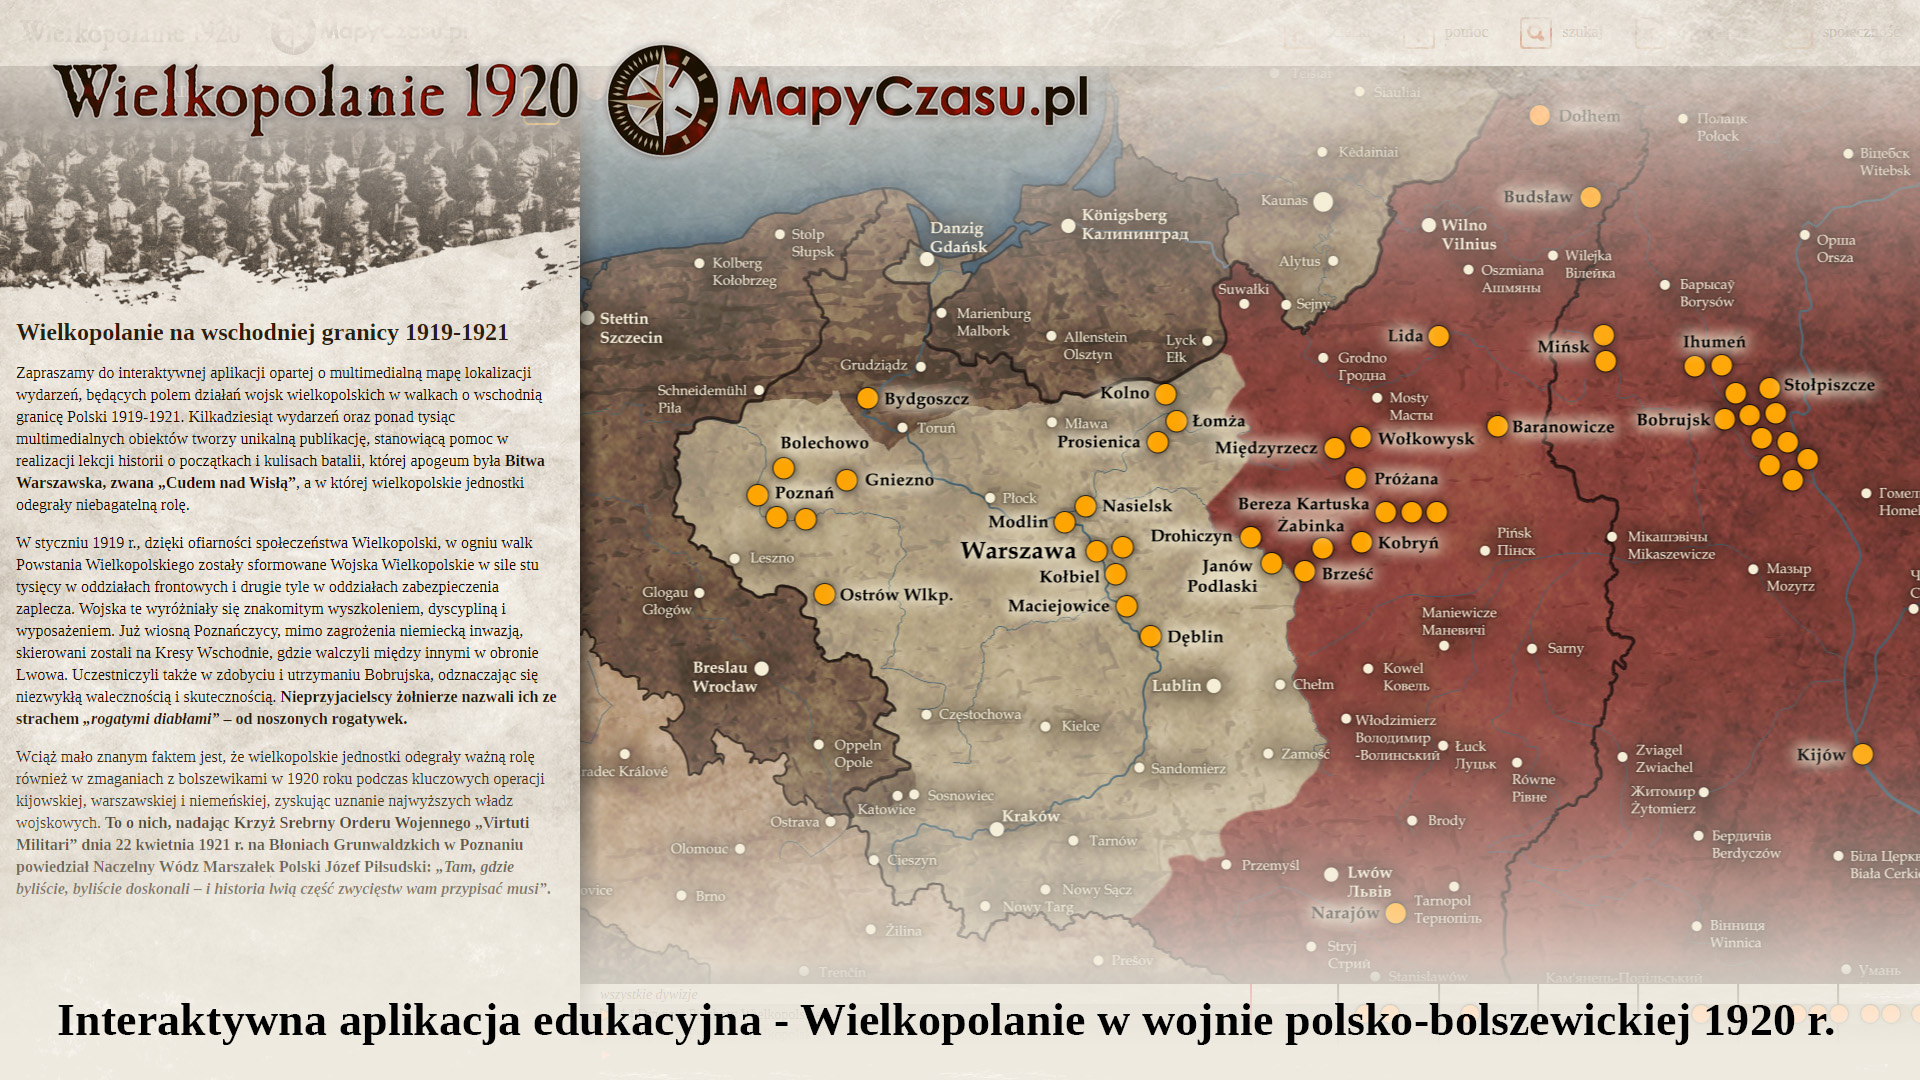 Premiera interaktywnej aplikacji edukacyjnej „Wielkopolanie w wojnie polsko-bolszewickiej 1920”